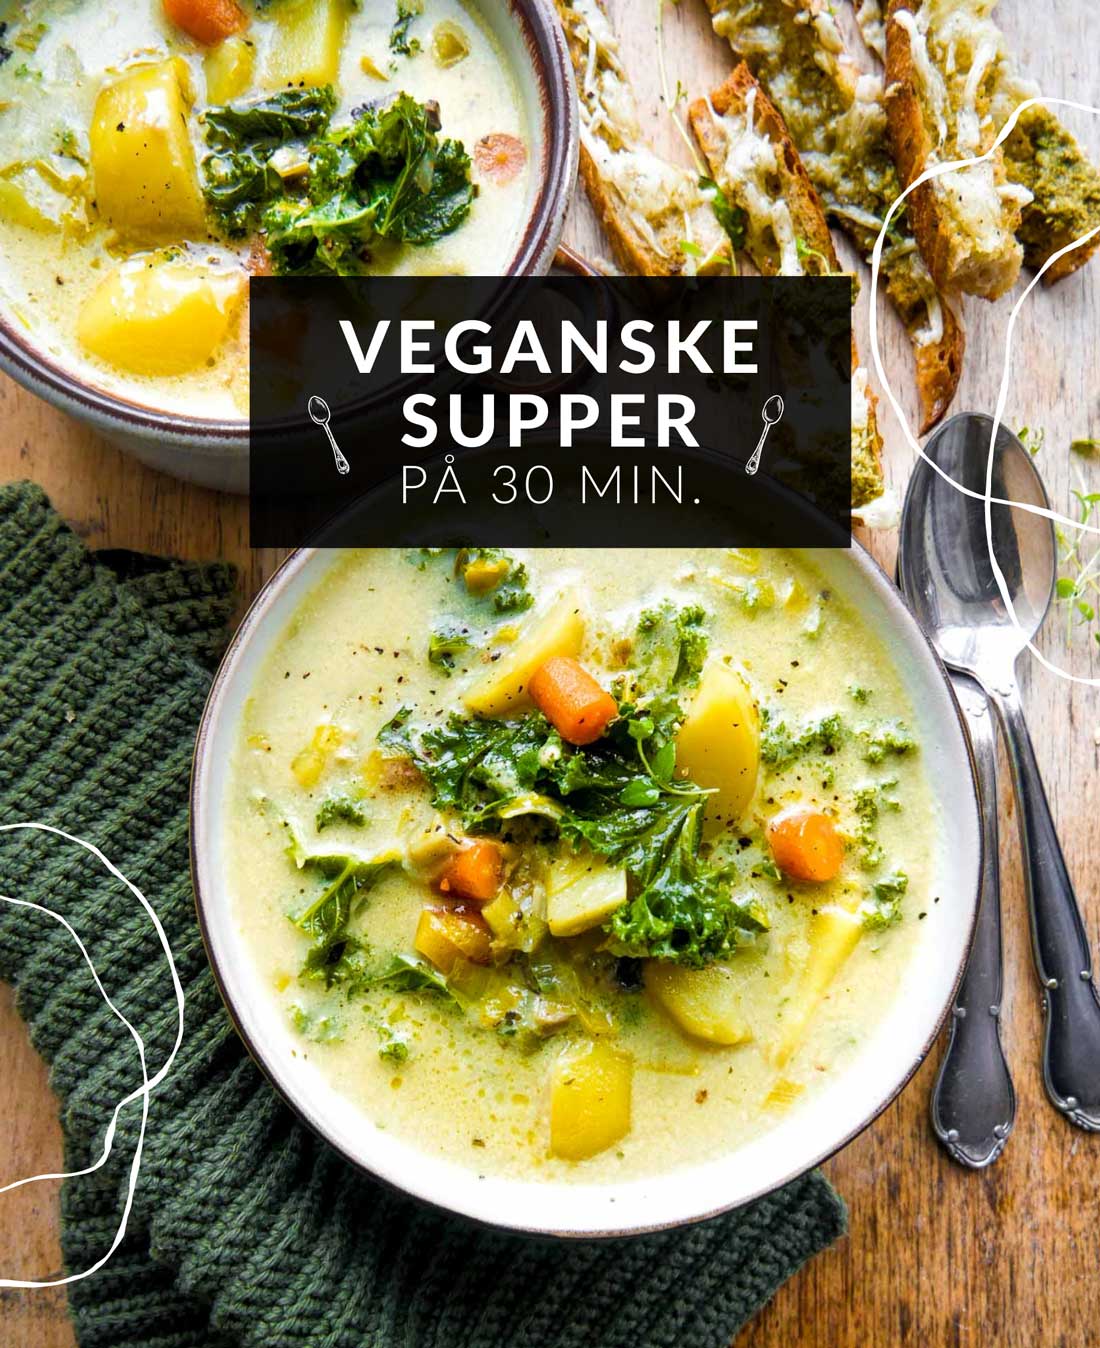 veganske supper nemme opskrifter til suppe med grøntsager